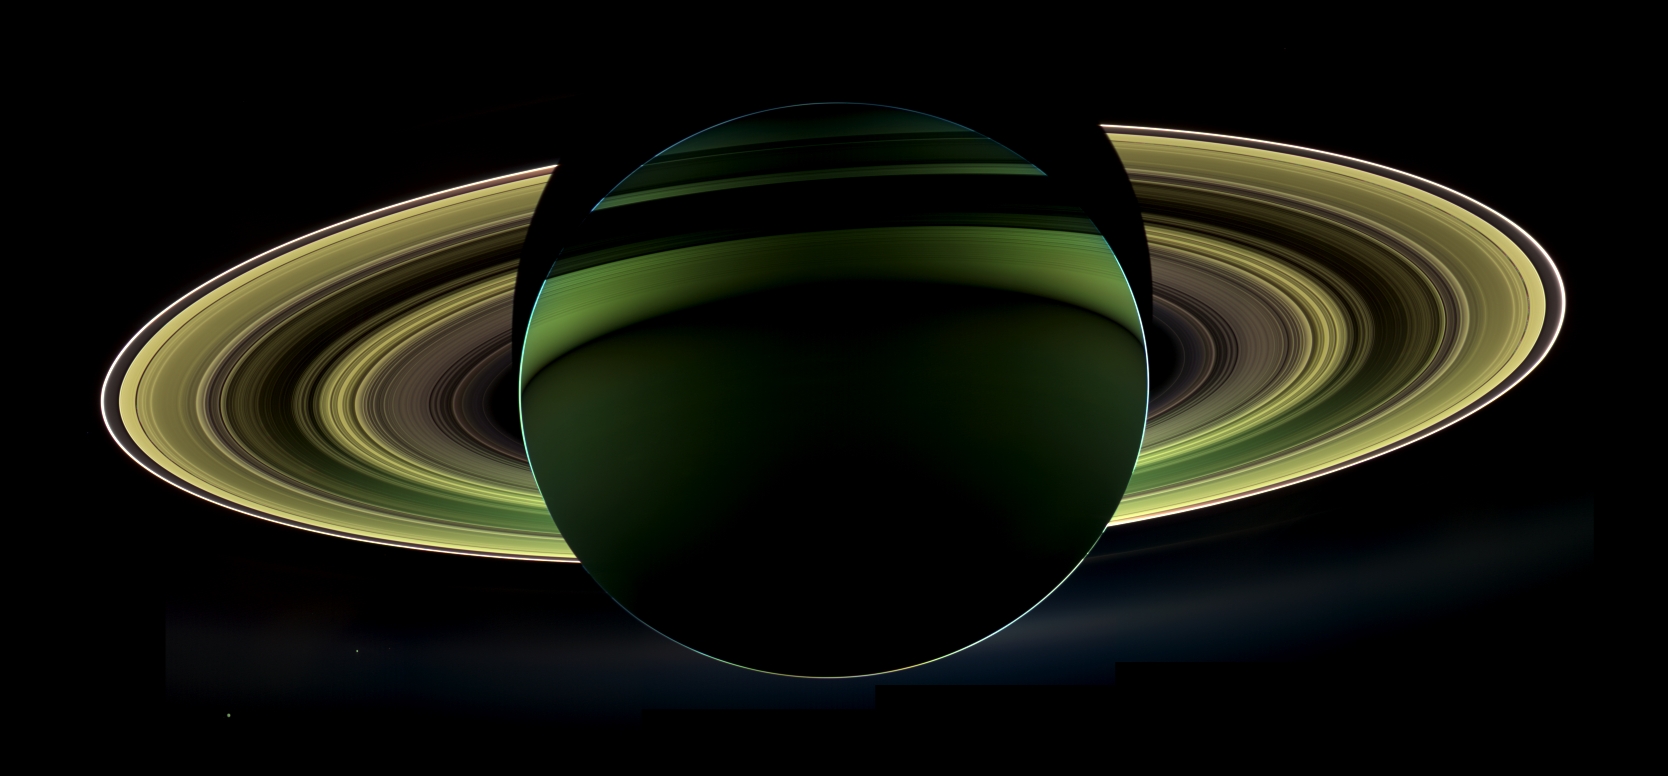 Saturne photographiée à contre-jour le 17 octobre 2012 par la sonde spatiale Cassini. Cette dernière vient de fêter ses 15 ans dans l'espace.&nbsp;© Nasa, JPL, Caltech, SSI